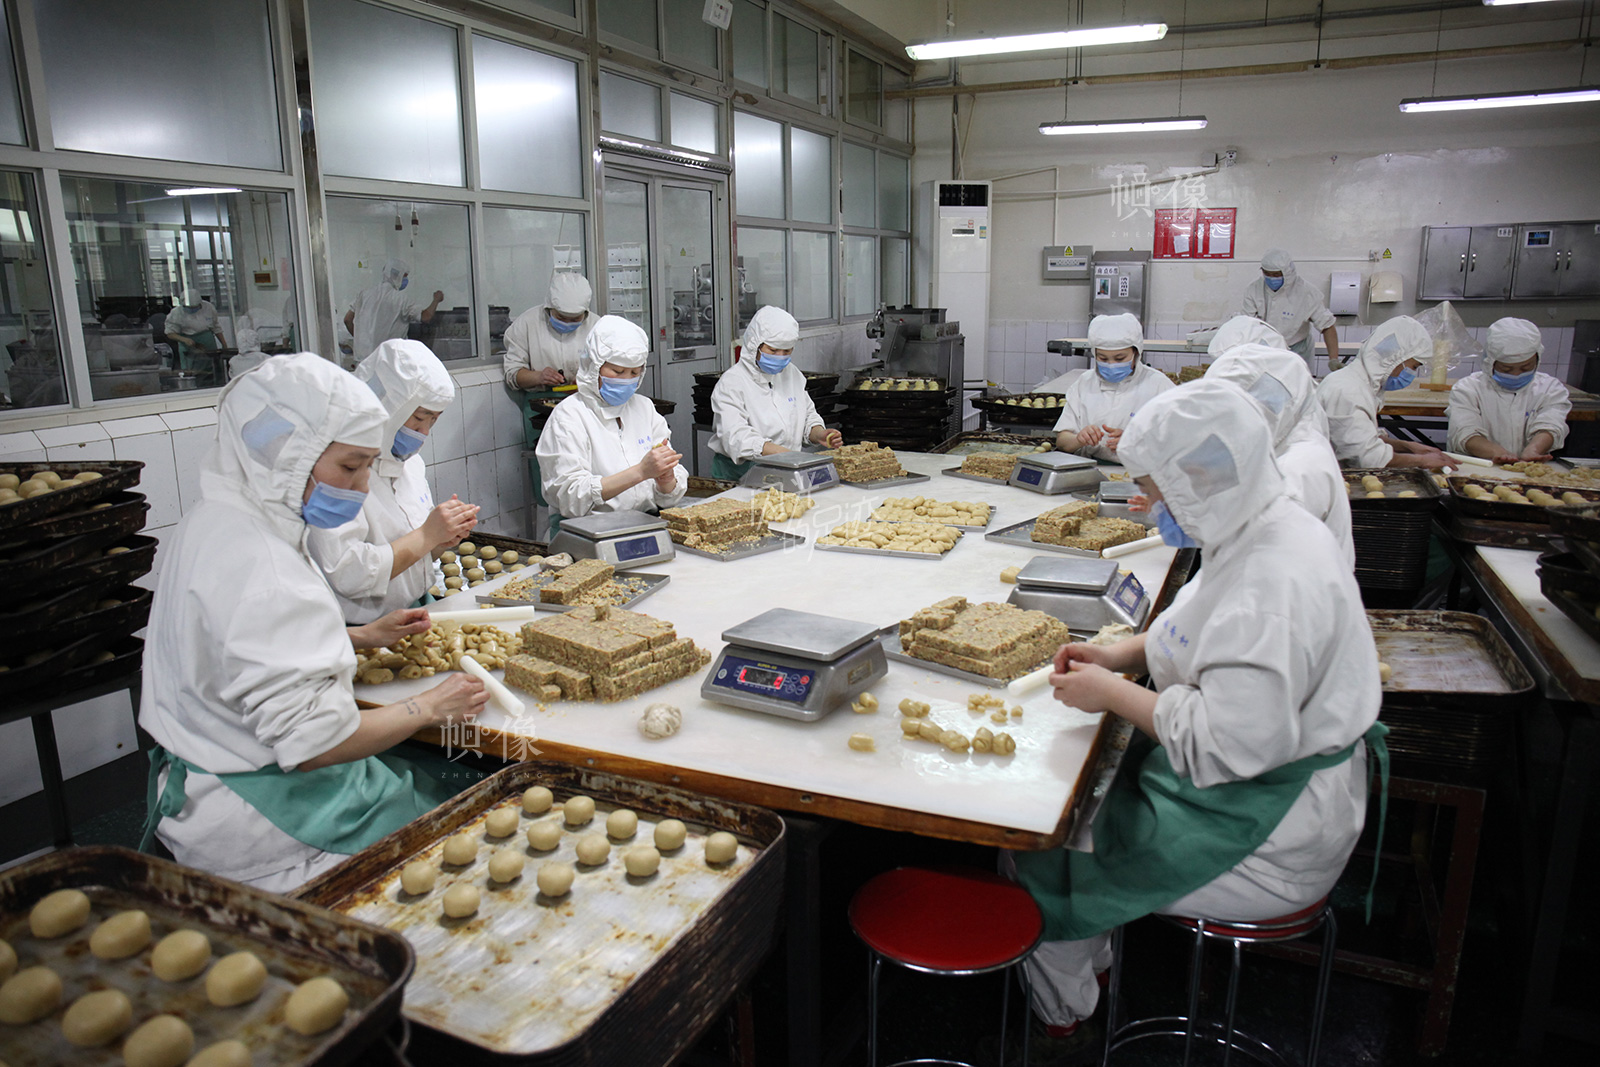 2017年3月2日,北京稻香村生产加工车间,工人正在手工制作糕点